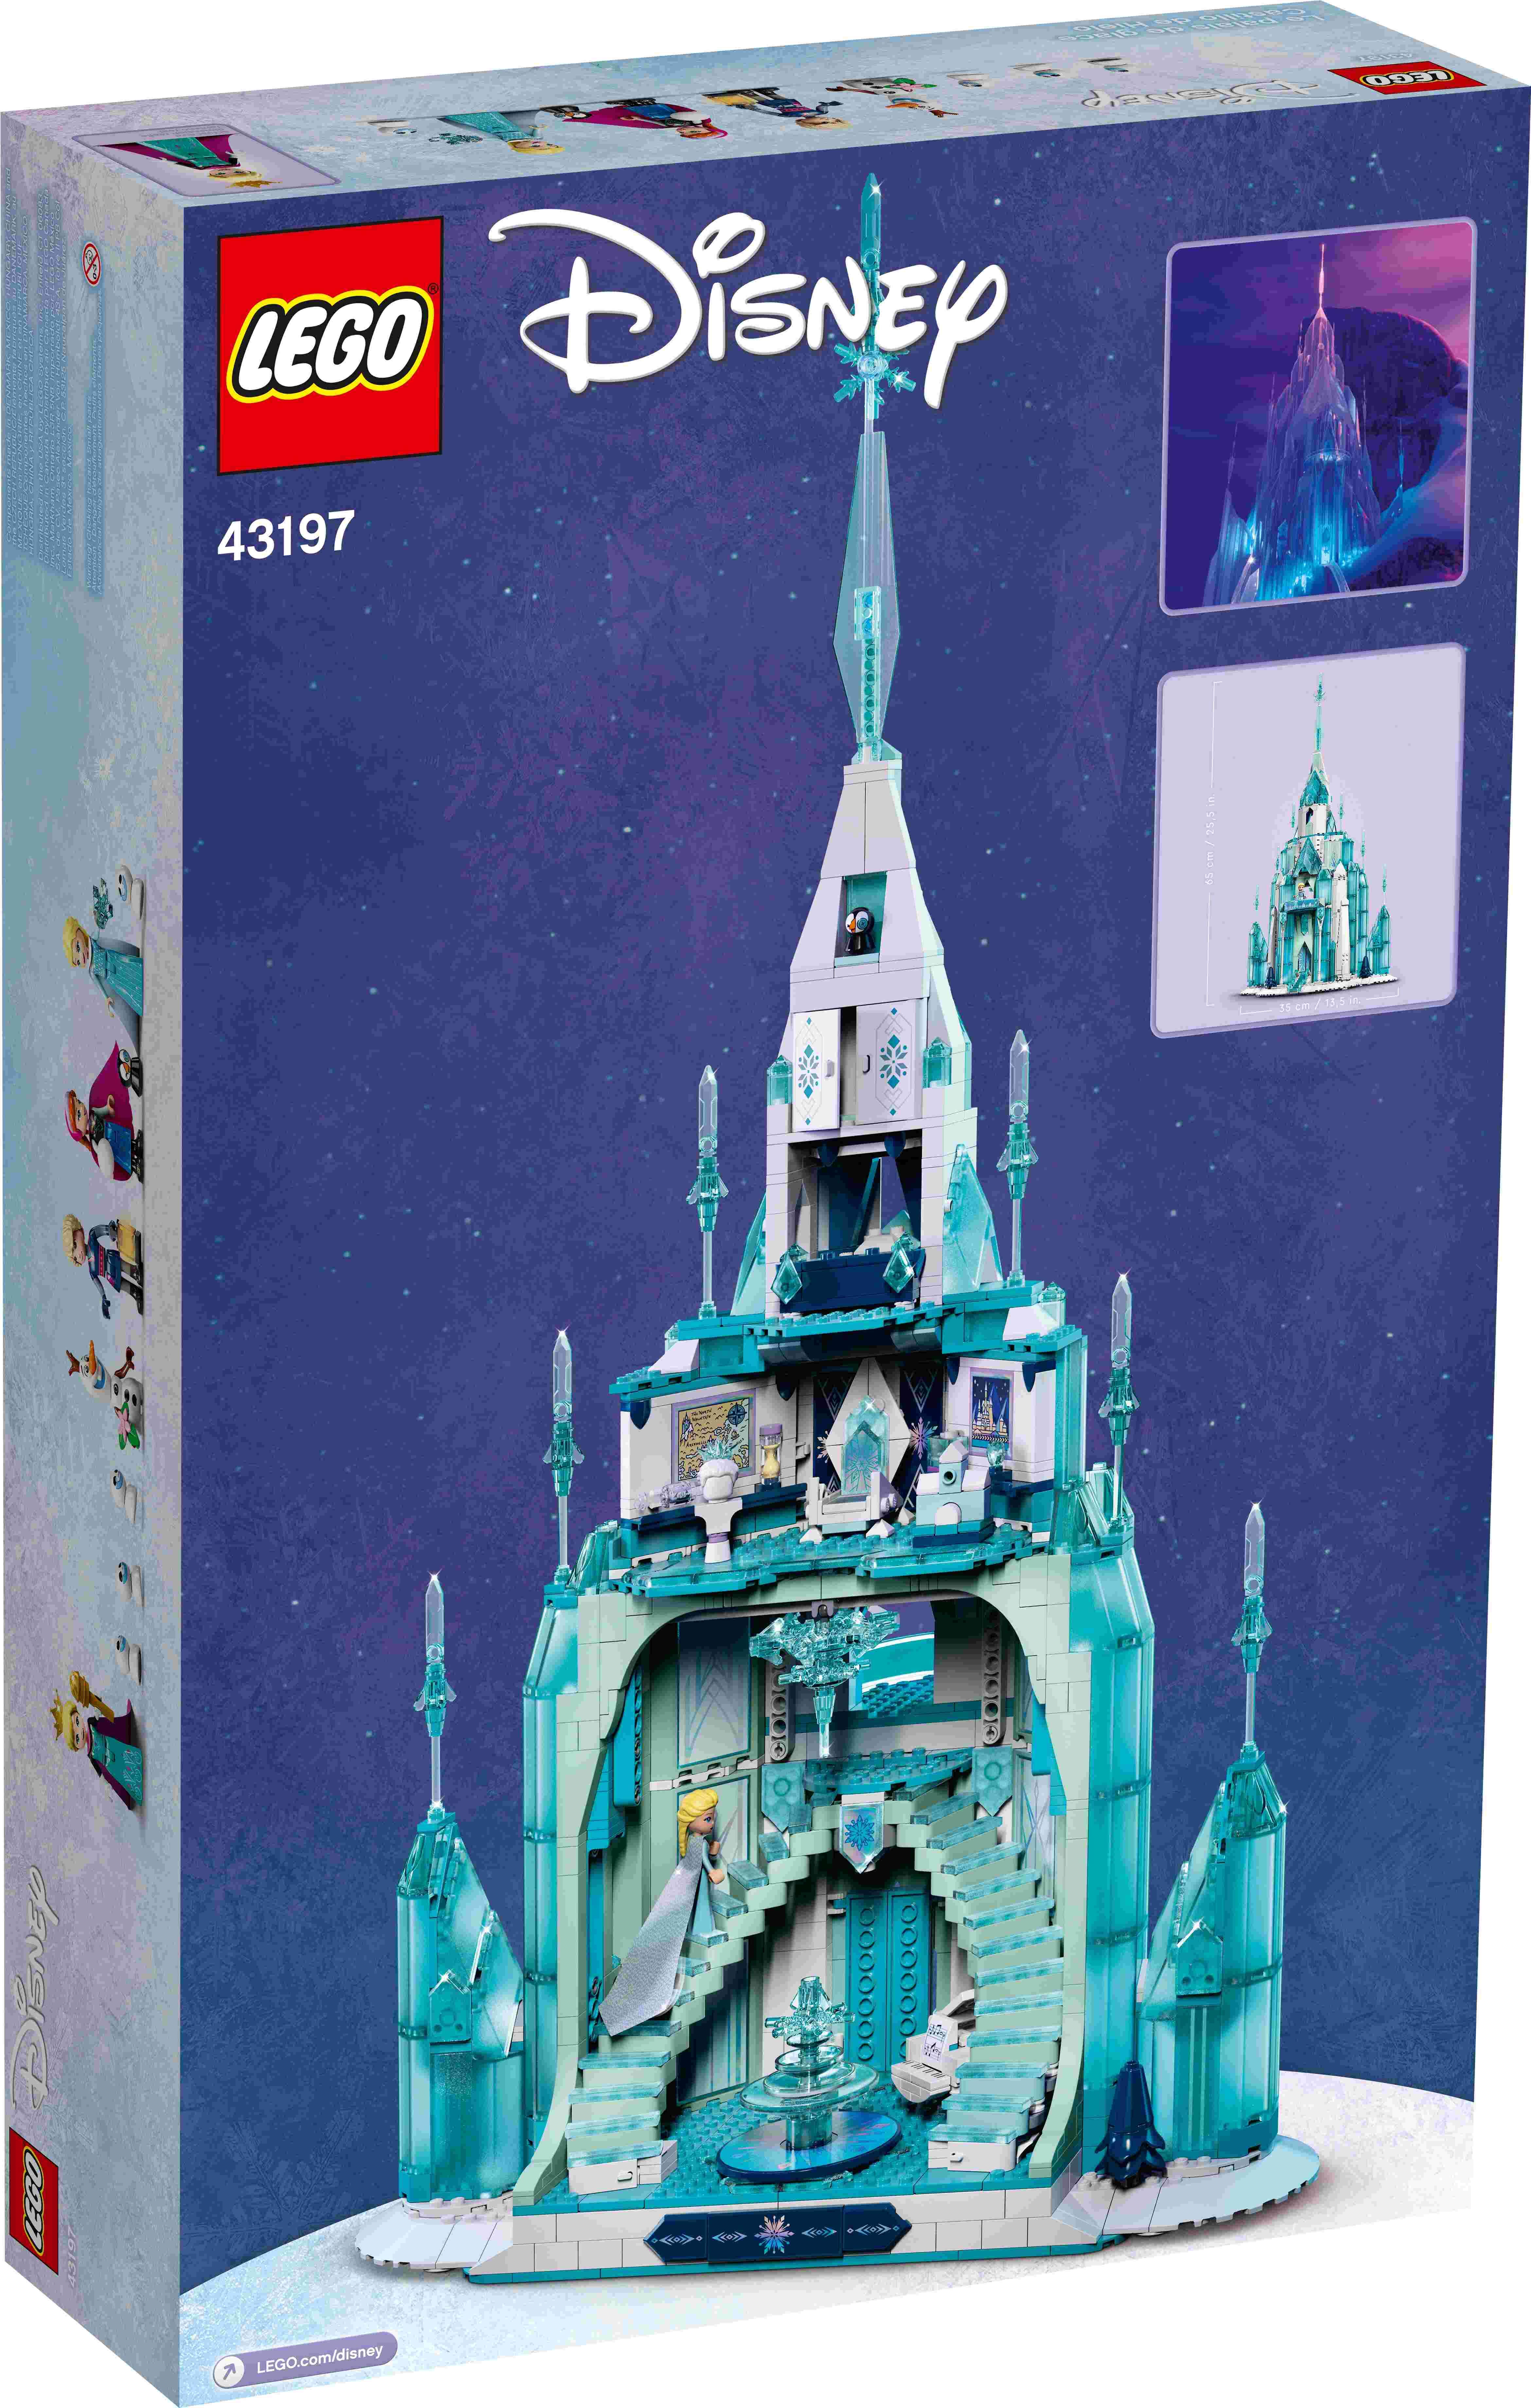 LEGO 43197 Disney Der Eispalast, Frozen, Figuren Anna, Elsa, Kristoff und Olaf